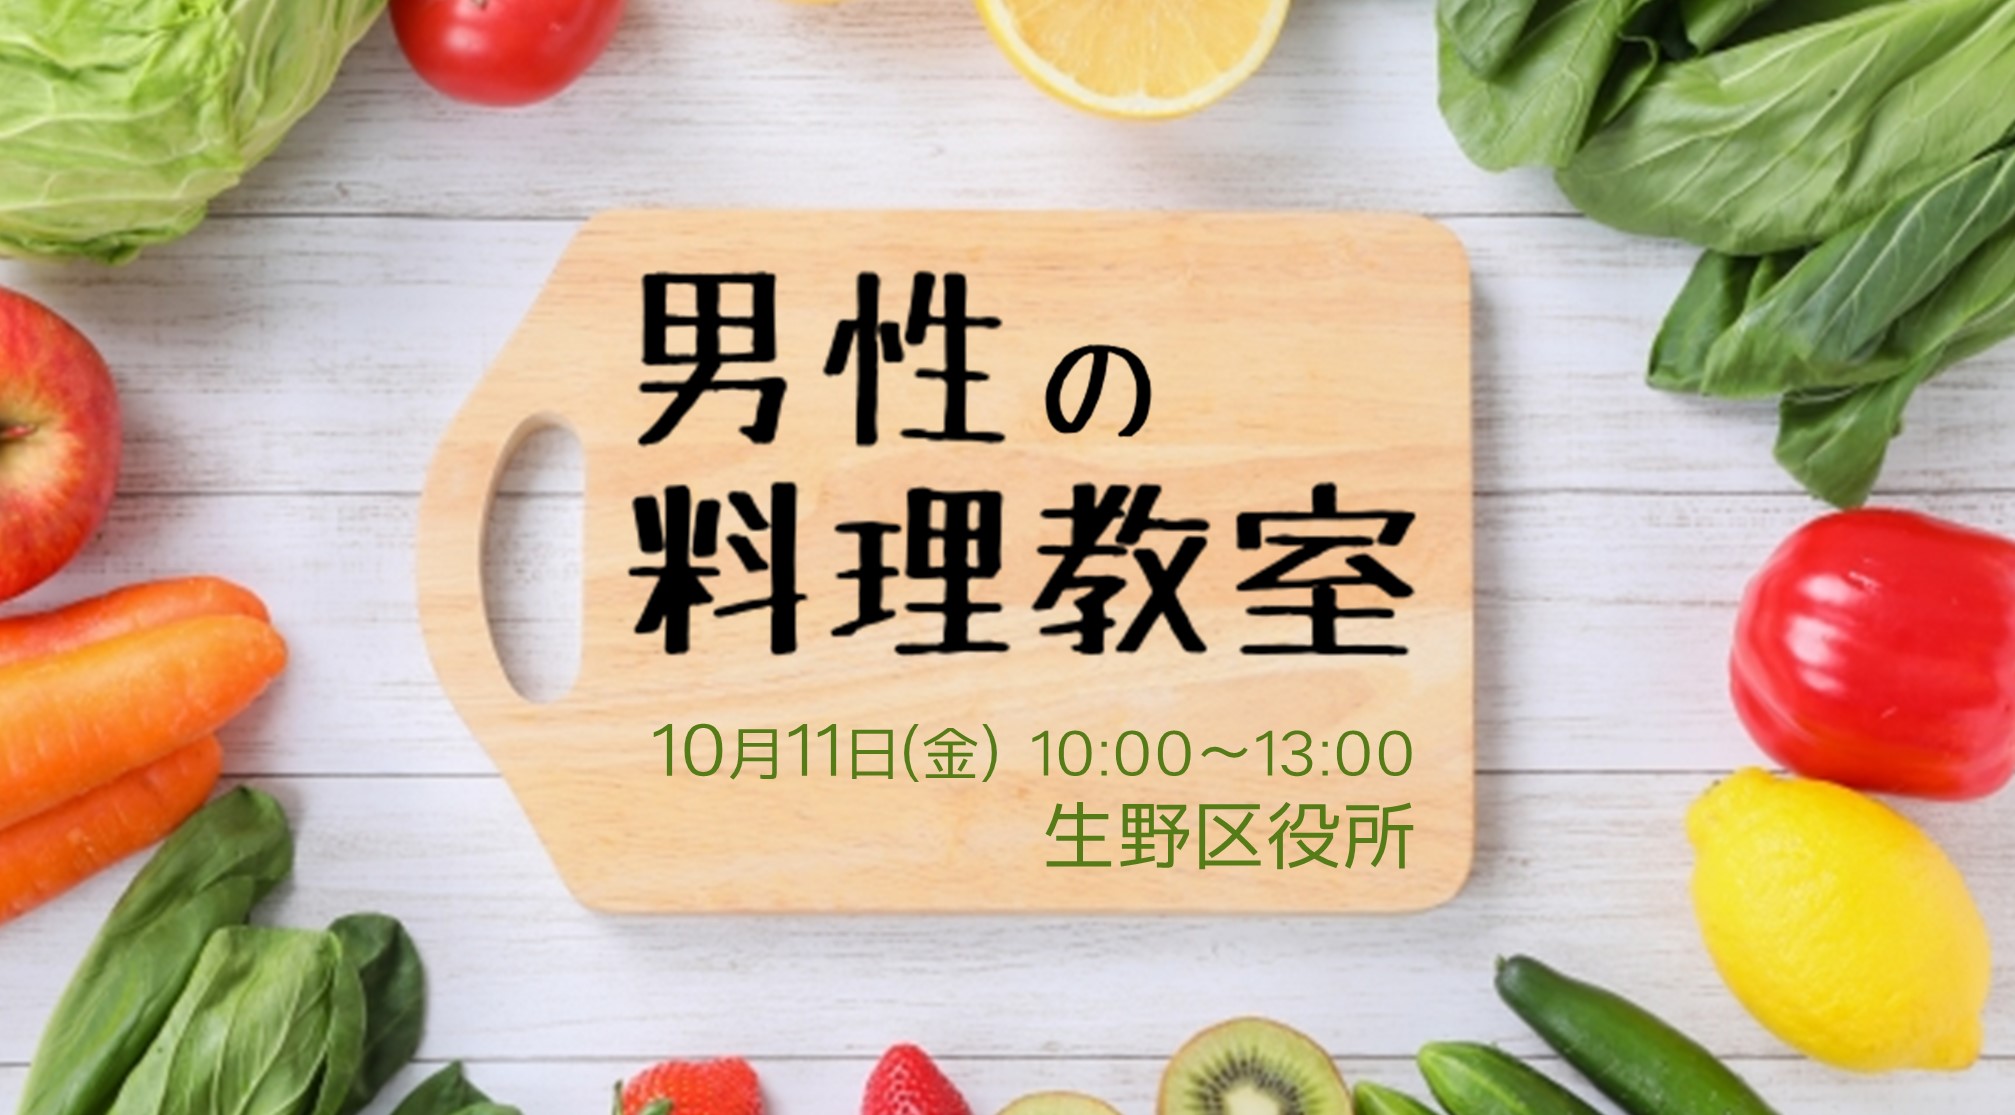 【イベント】男性の料理教室【要申込】